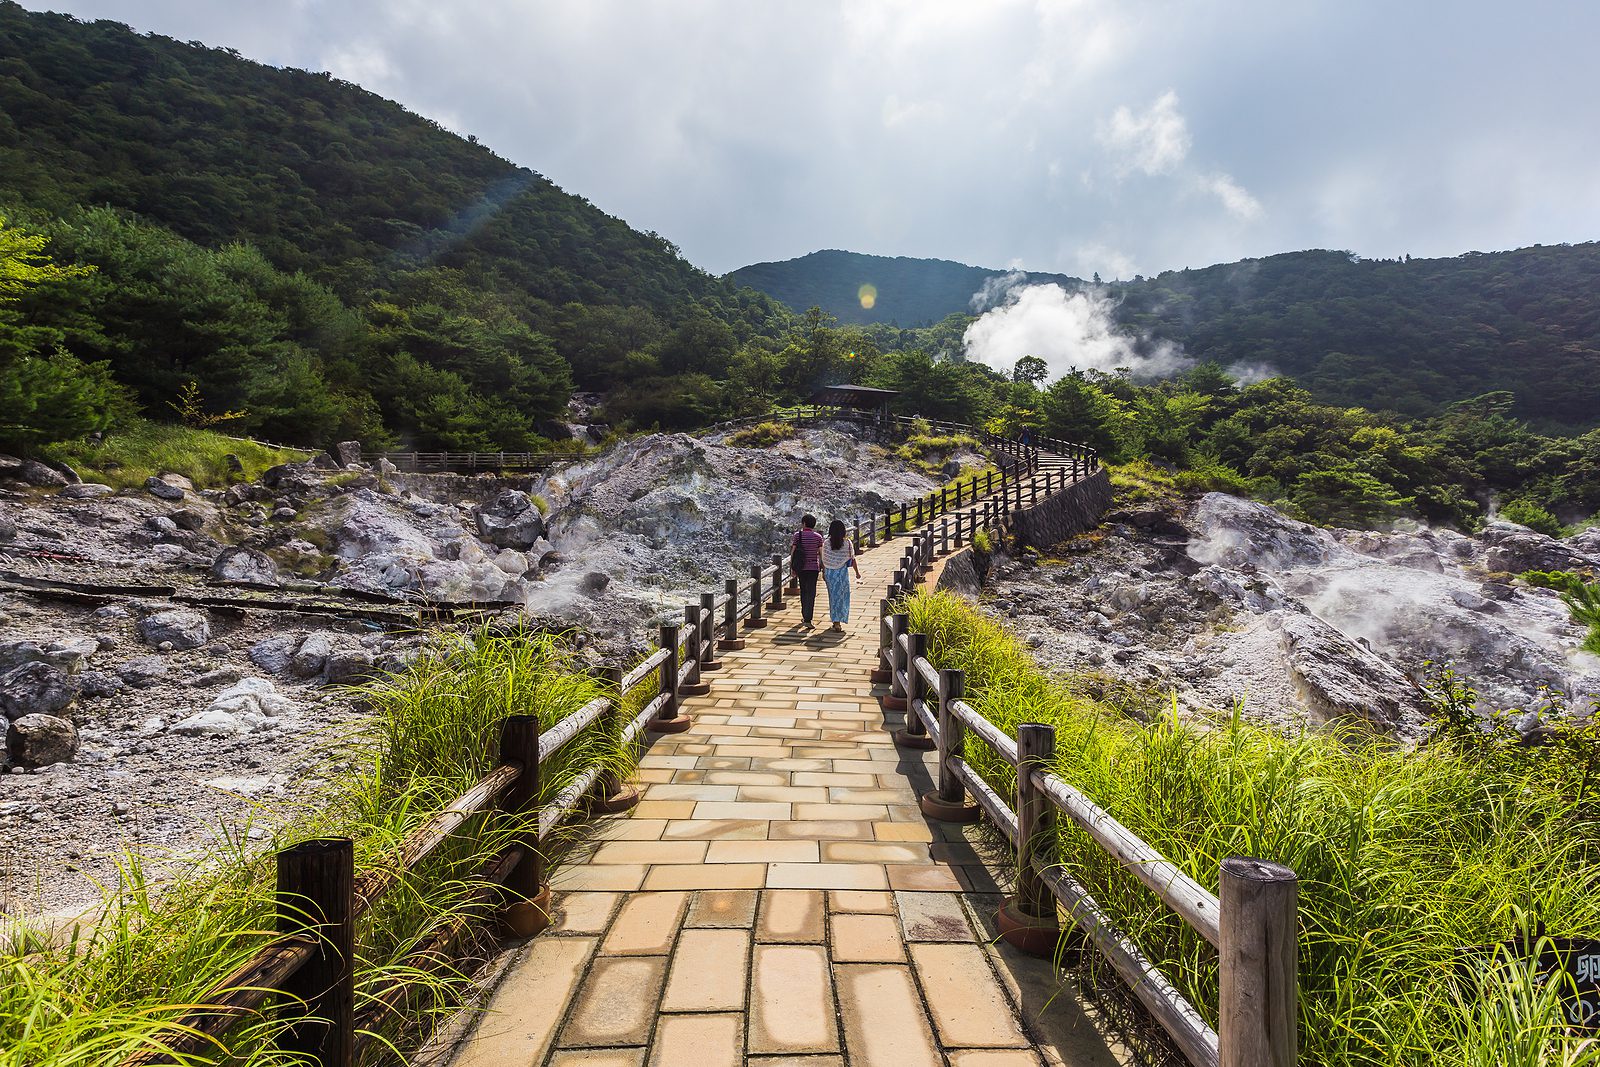 Unsen Onsen warmwaterbronnen zijn een aanrader als je op outdoor reis bent in Japan